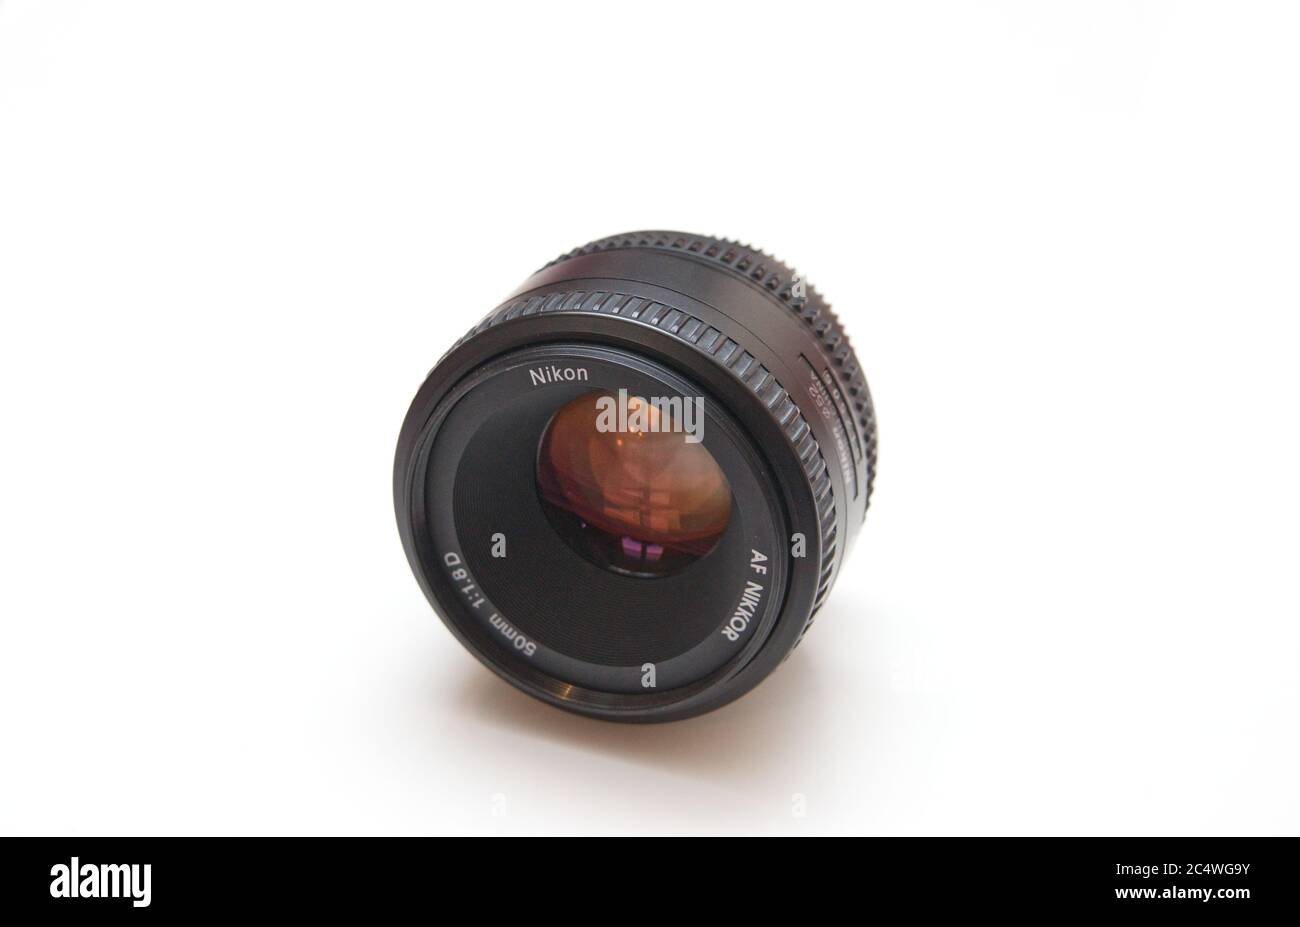 Nikkor AF 50mm f1.8 Lens for Nikon DSLR Cameras Stock Photo